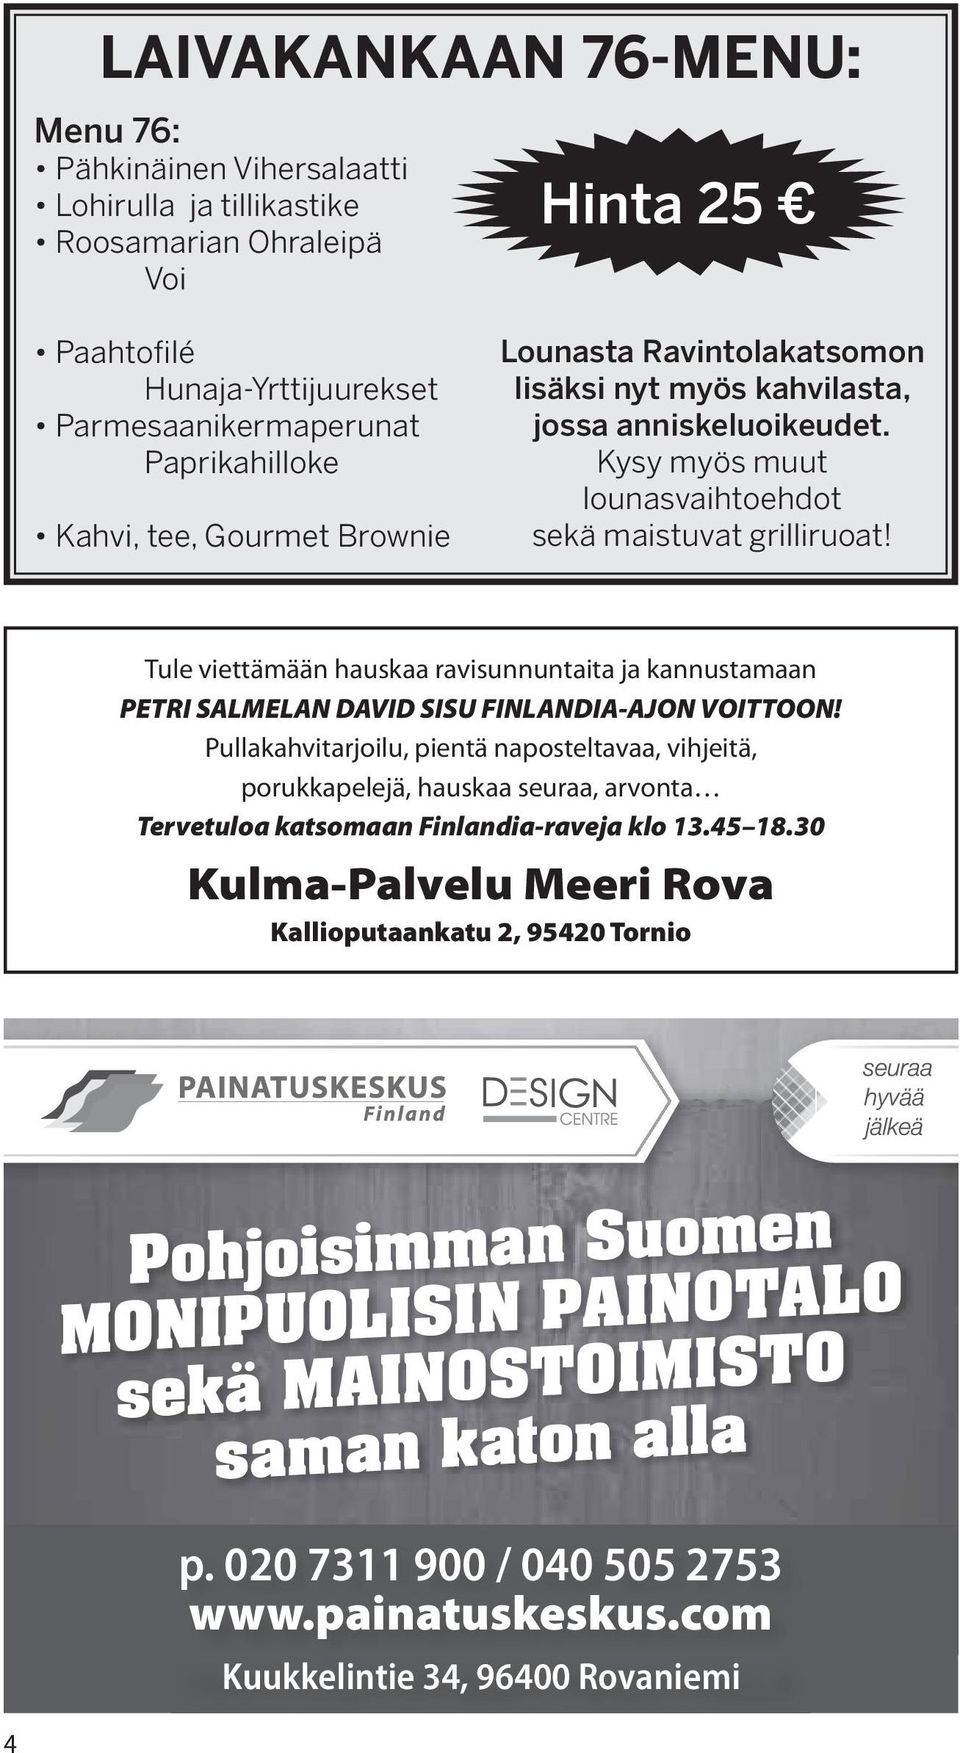 Tule viettämään hauskaa ravisunnuntaita ja kannustamaan PETRI SALMELAN DAVID SISU FINLANDIA-AJON VOITTOON!